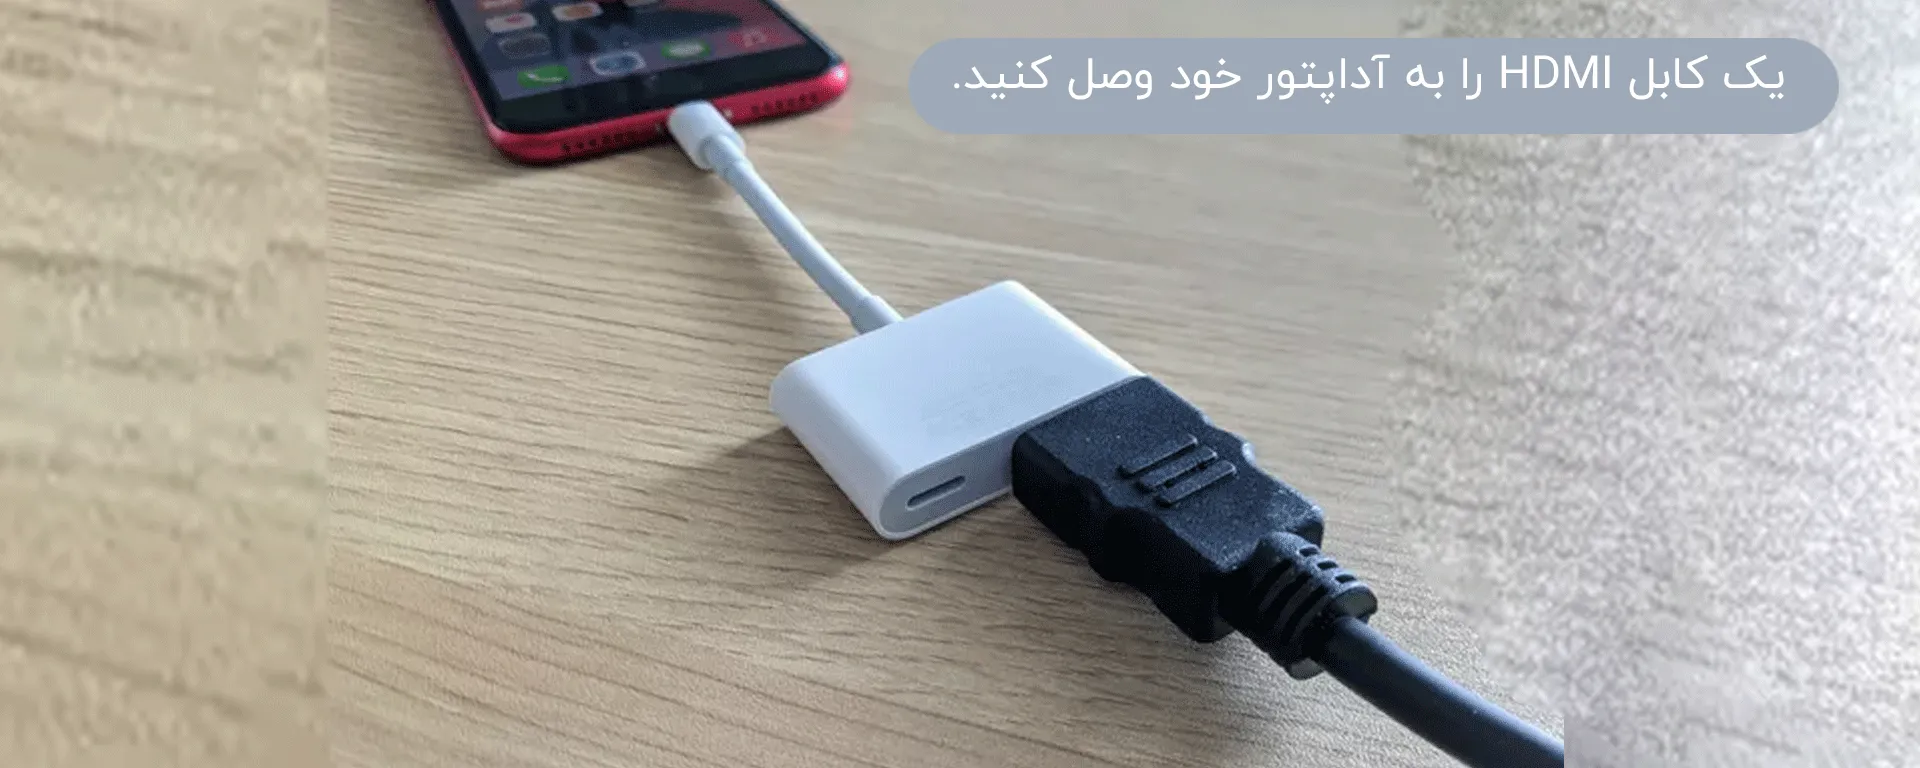 یک کابل HDMI را به آداپتور خود وصل کنید.